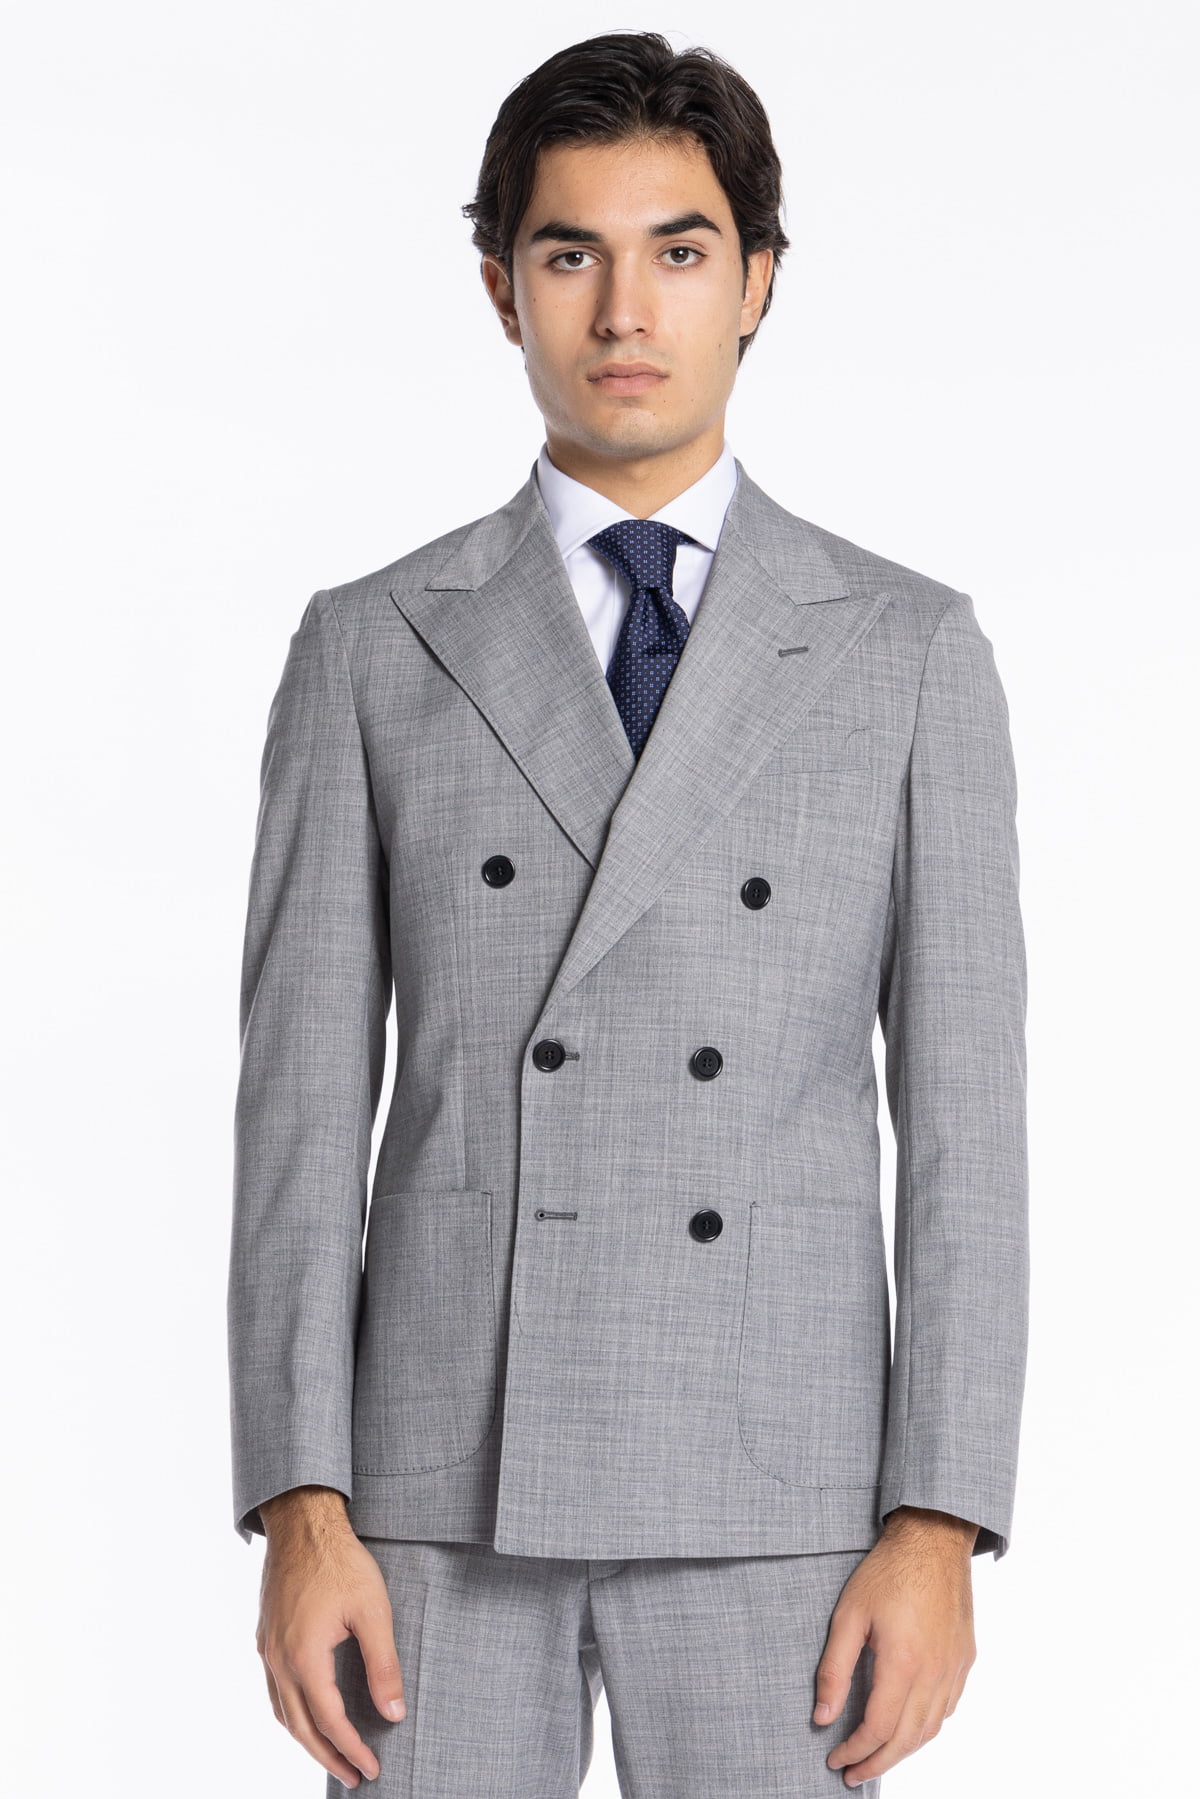 Abito uomo grigio chiaro con giacca doppiopetto fresco lana mista Rever a lancia Tasche a toppe e pantalone slim fit tasca america